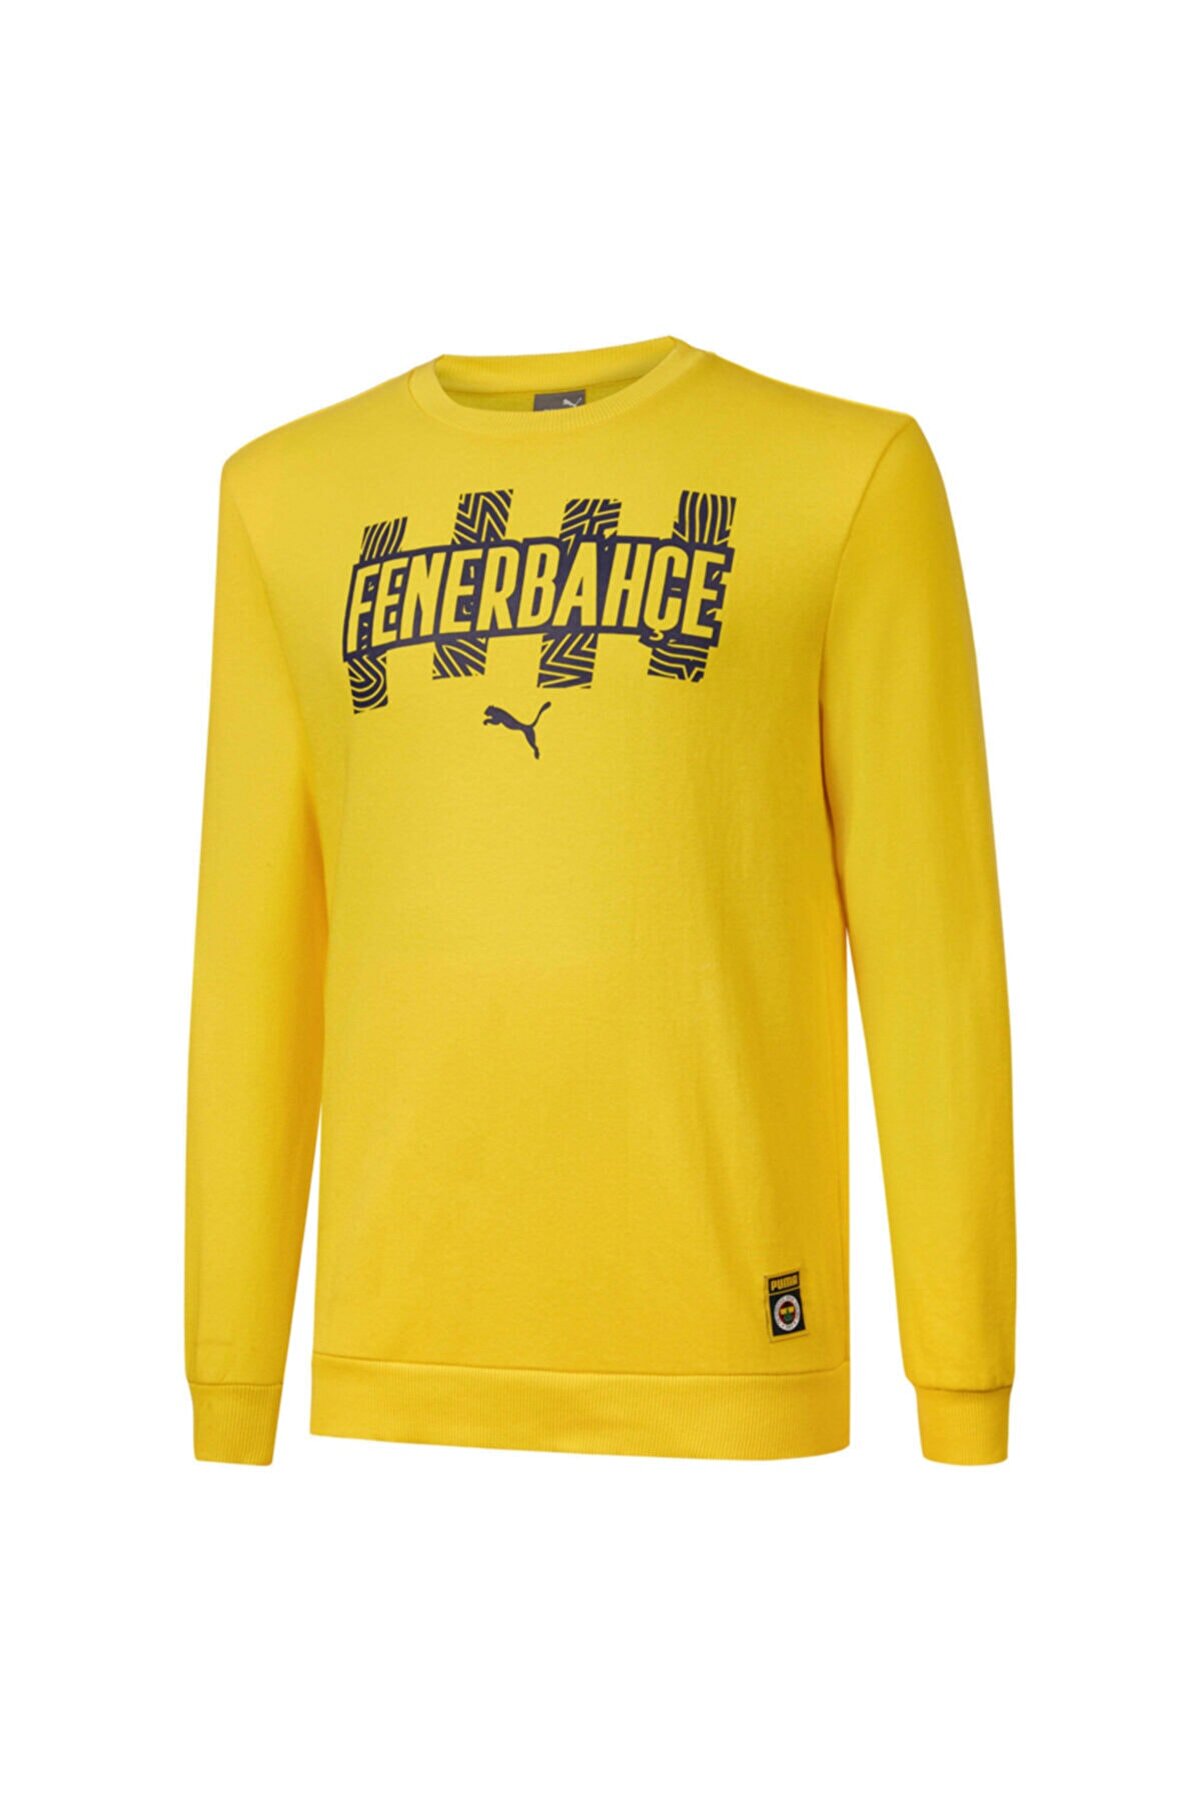 Fenerbahçe Fenerbahçe Sk Futbolcore Erkek Sarı Sweatshirt (767023-01)